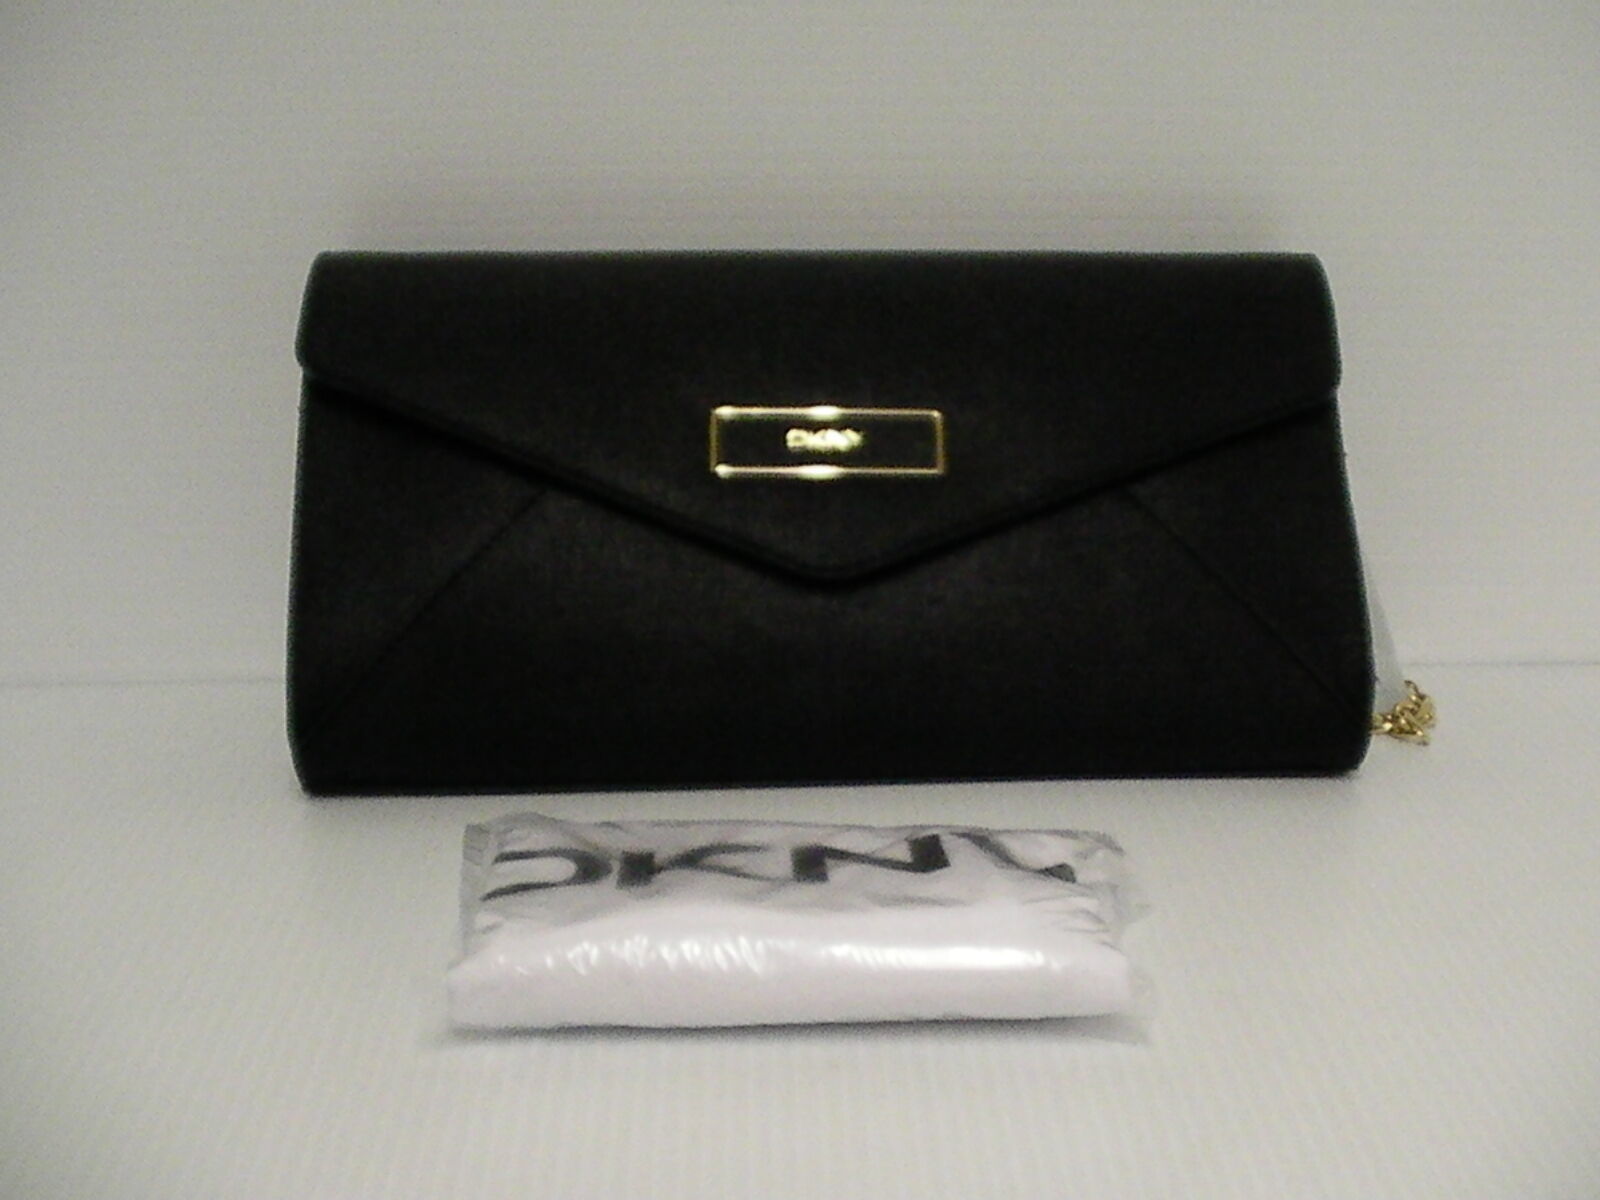 Primary image for DKNY Women shoulder bag handbag envelope saffiano leather black color